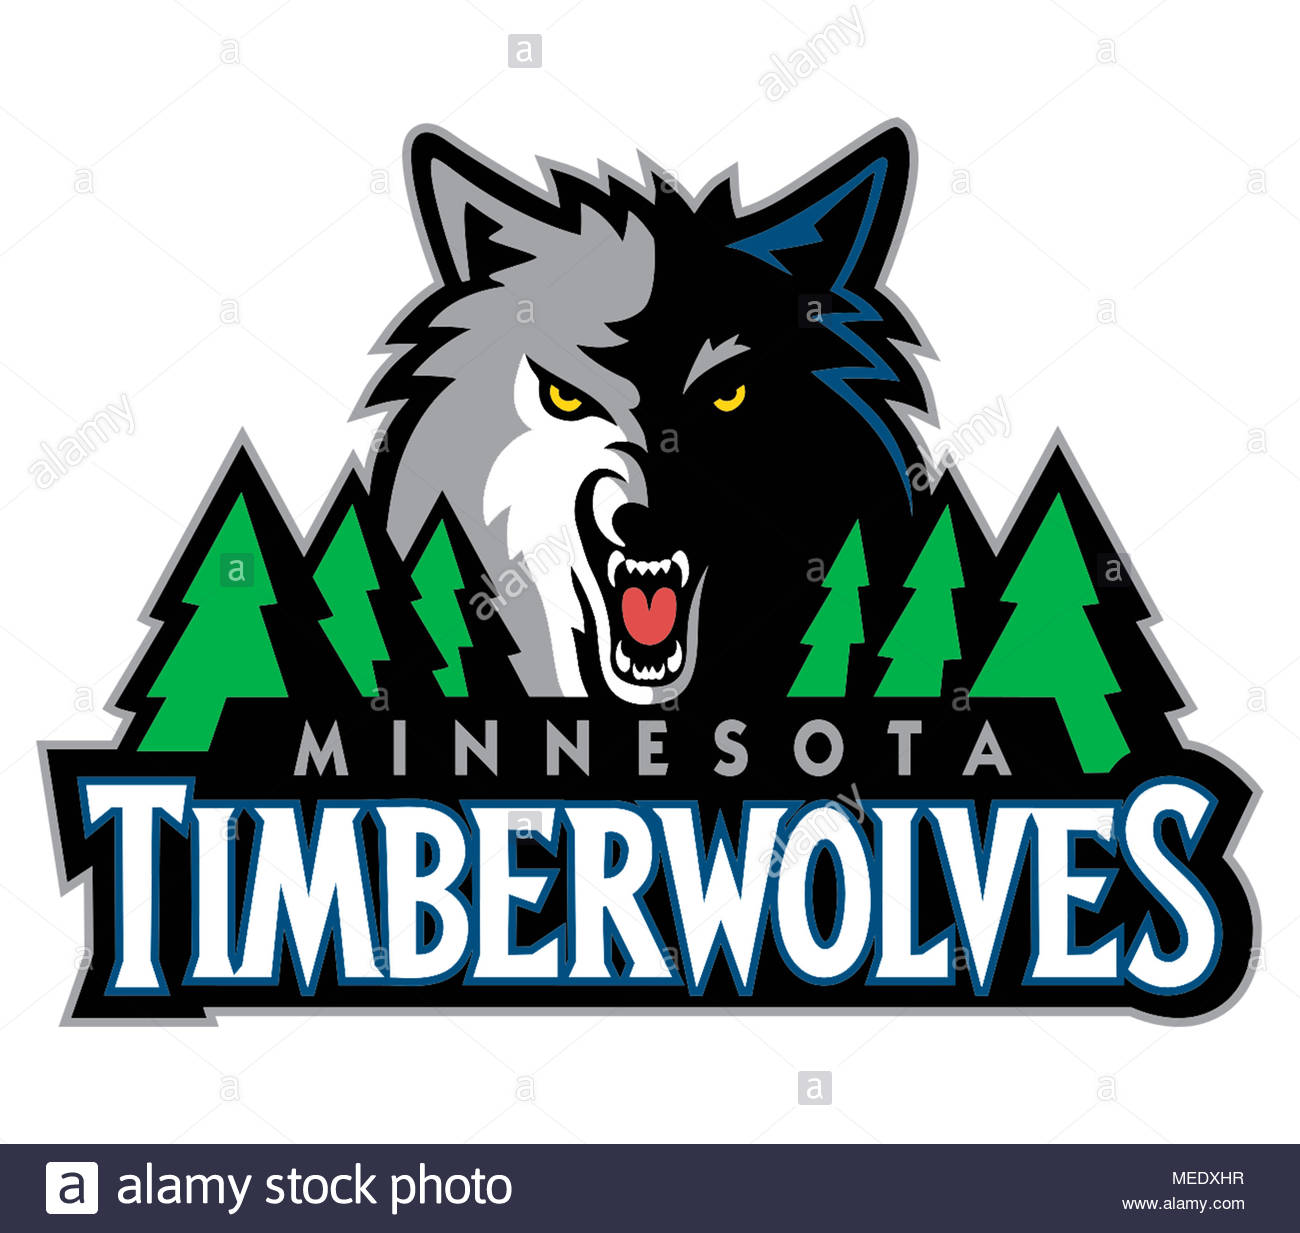 Minnesota Timberwolves icon logo